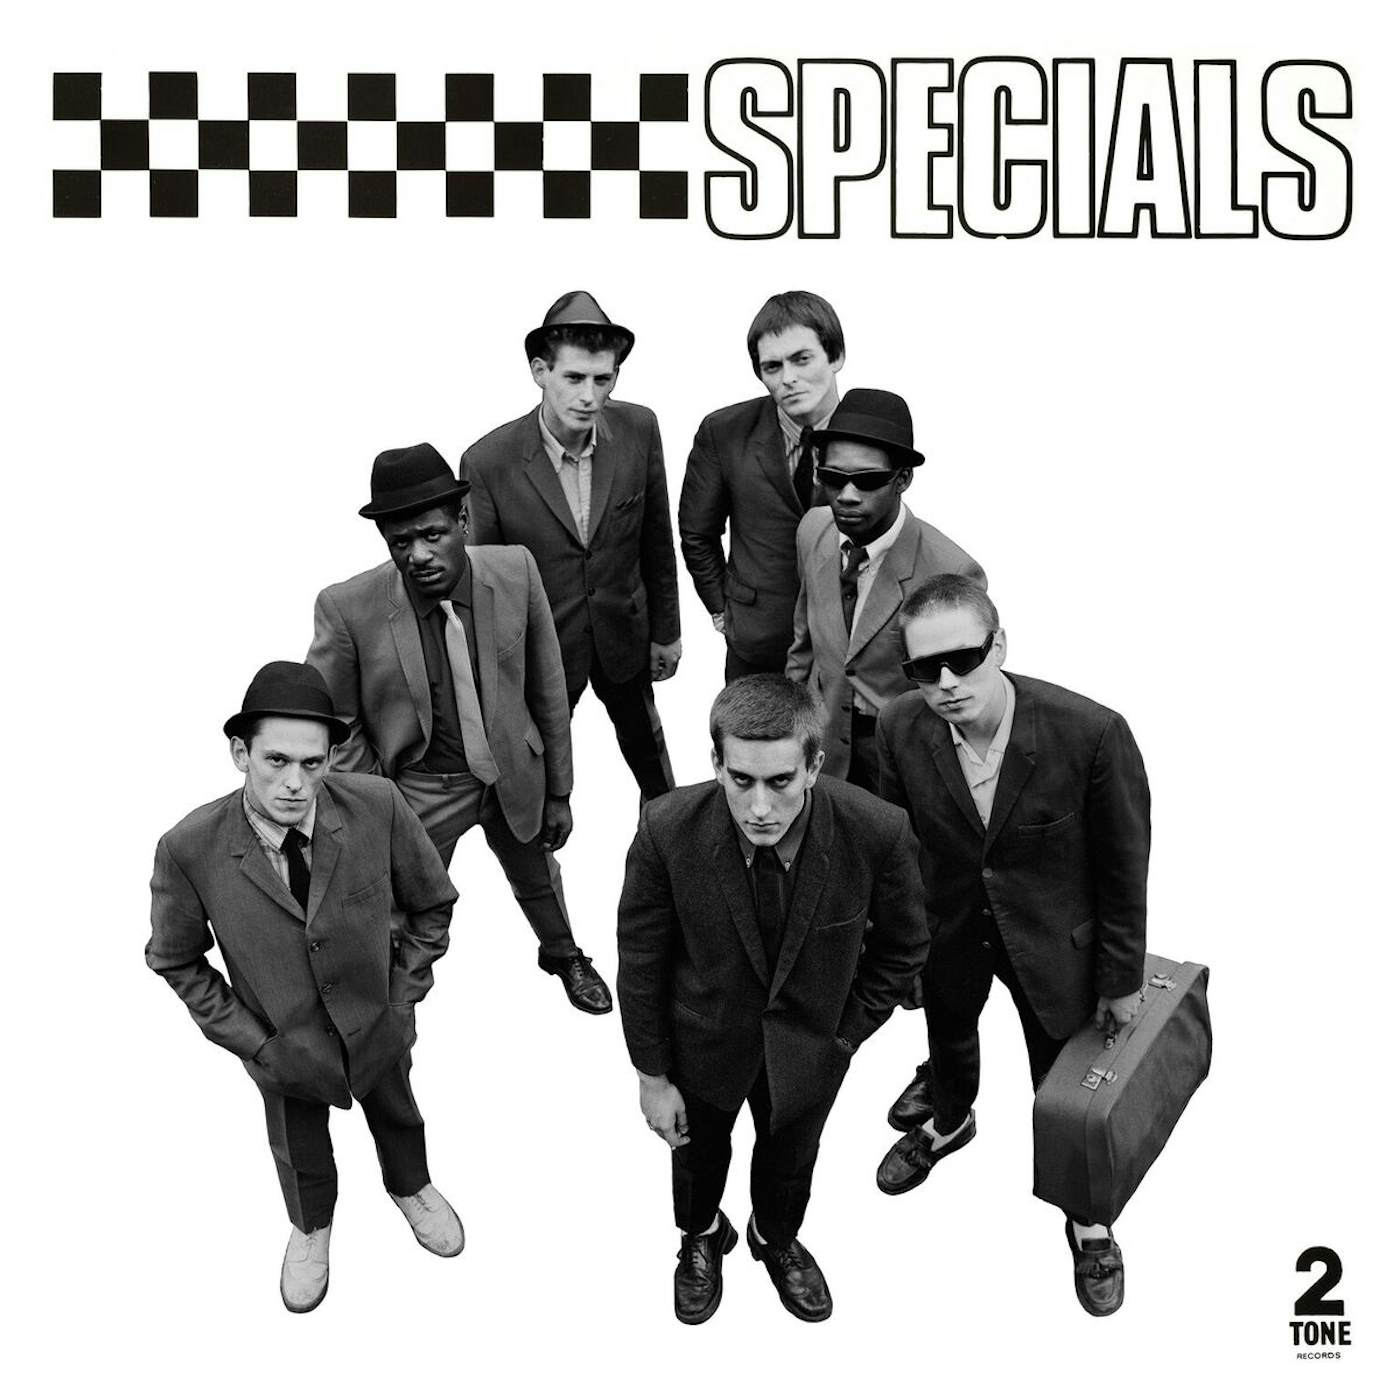 The Specials Vinyl Record